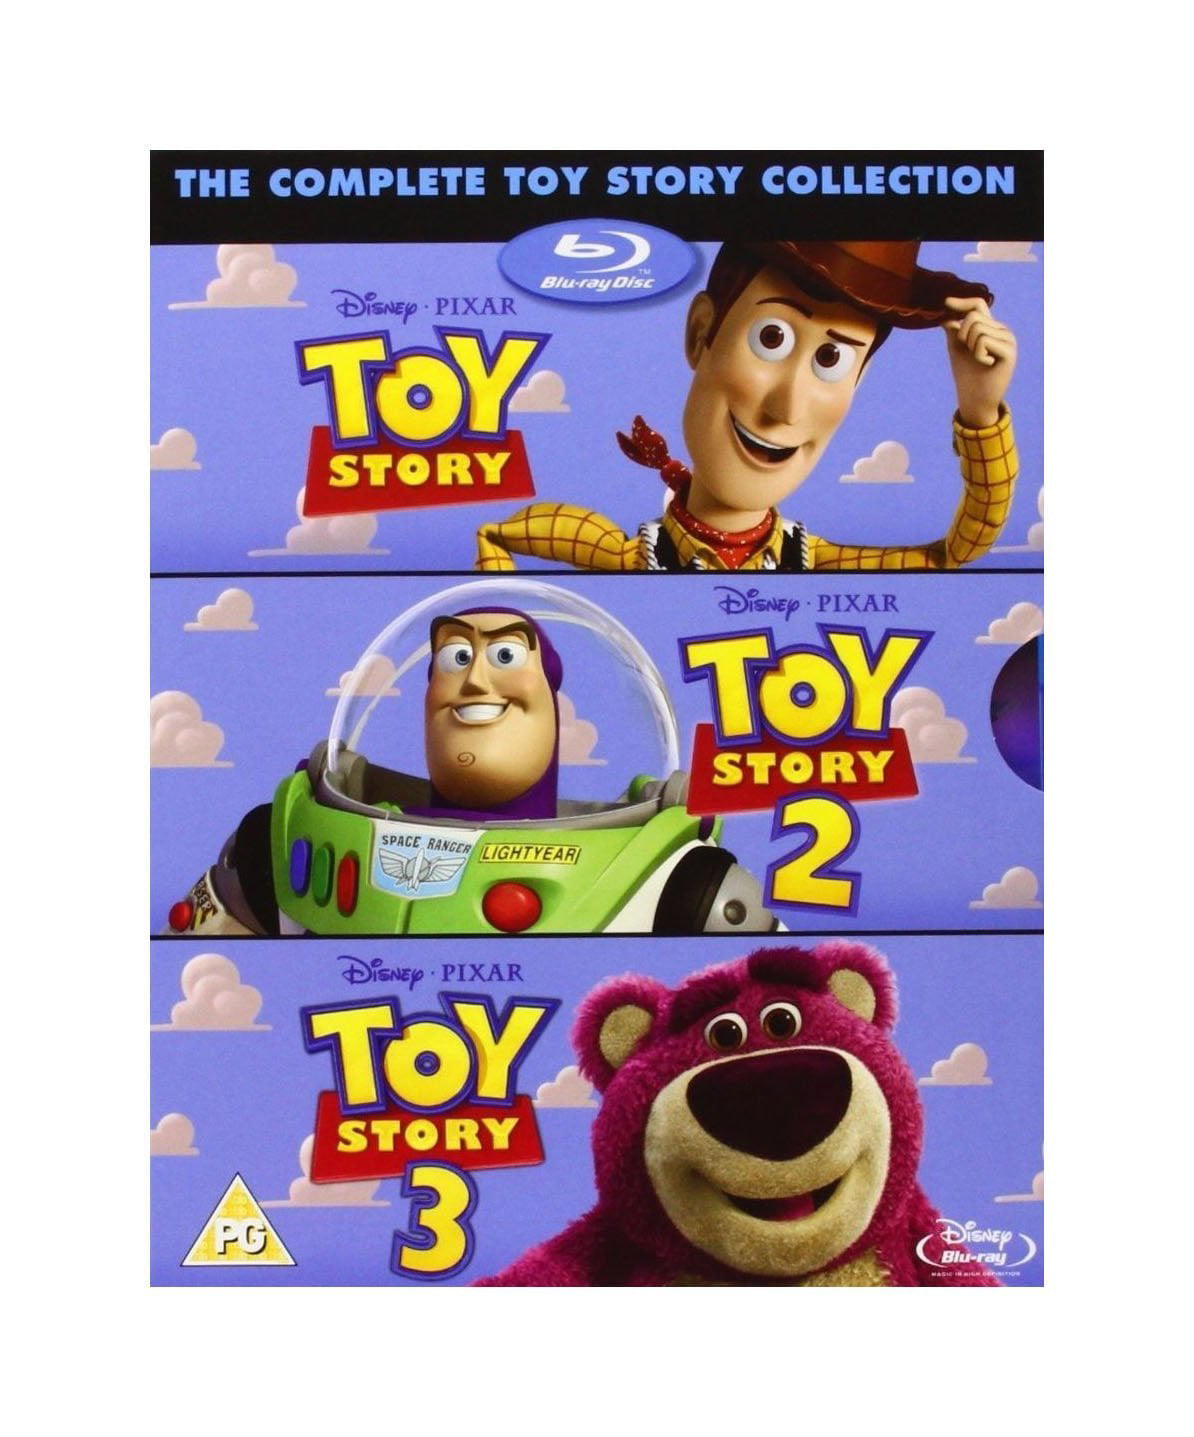 История игрушек Blu ray. Книжка история игрушек. Toy story 3 2010 Blu ray. Toy story Blu ray 100. Complete the toys